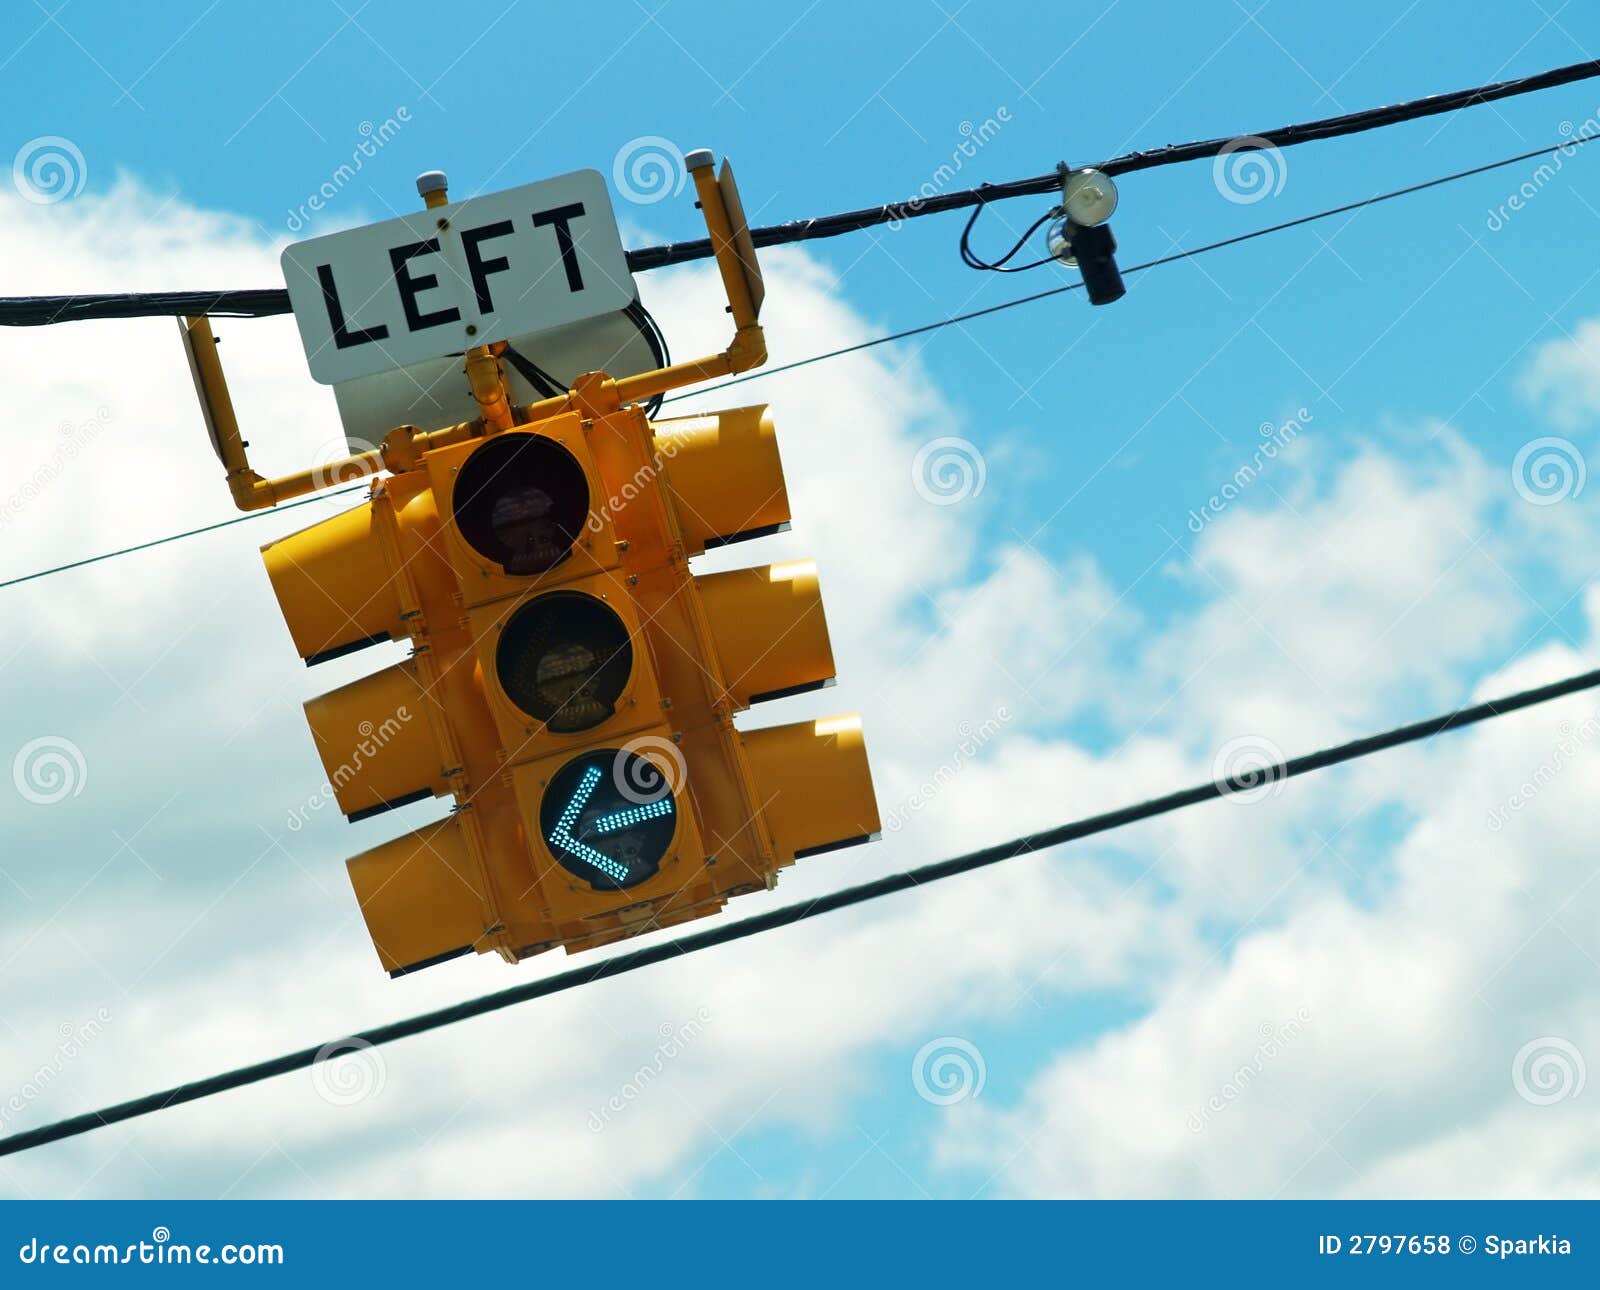 left turn light